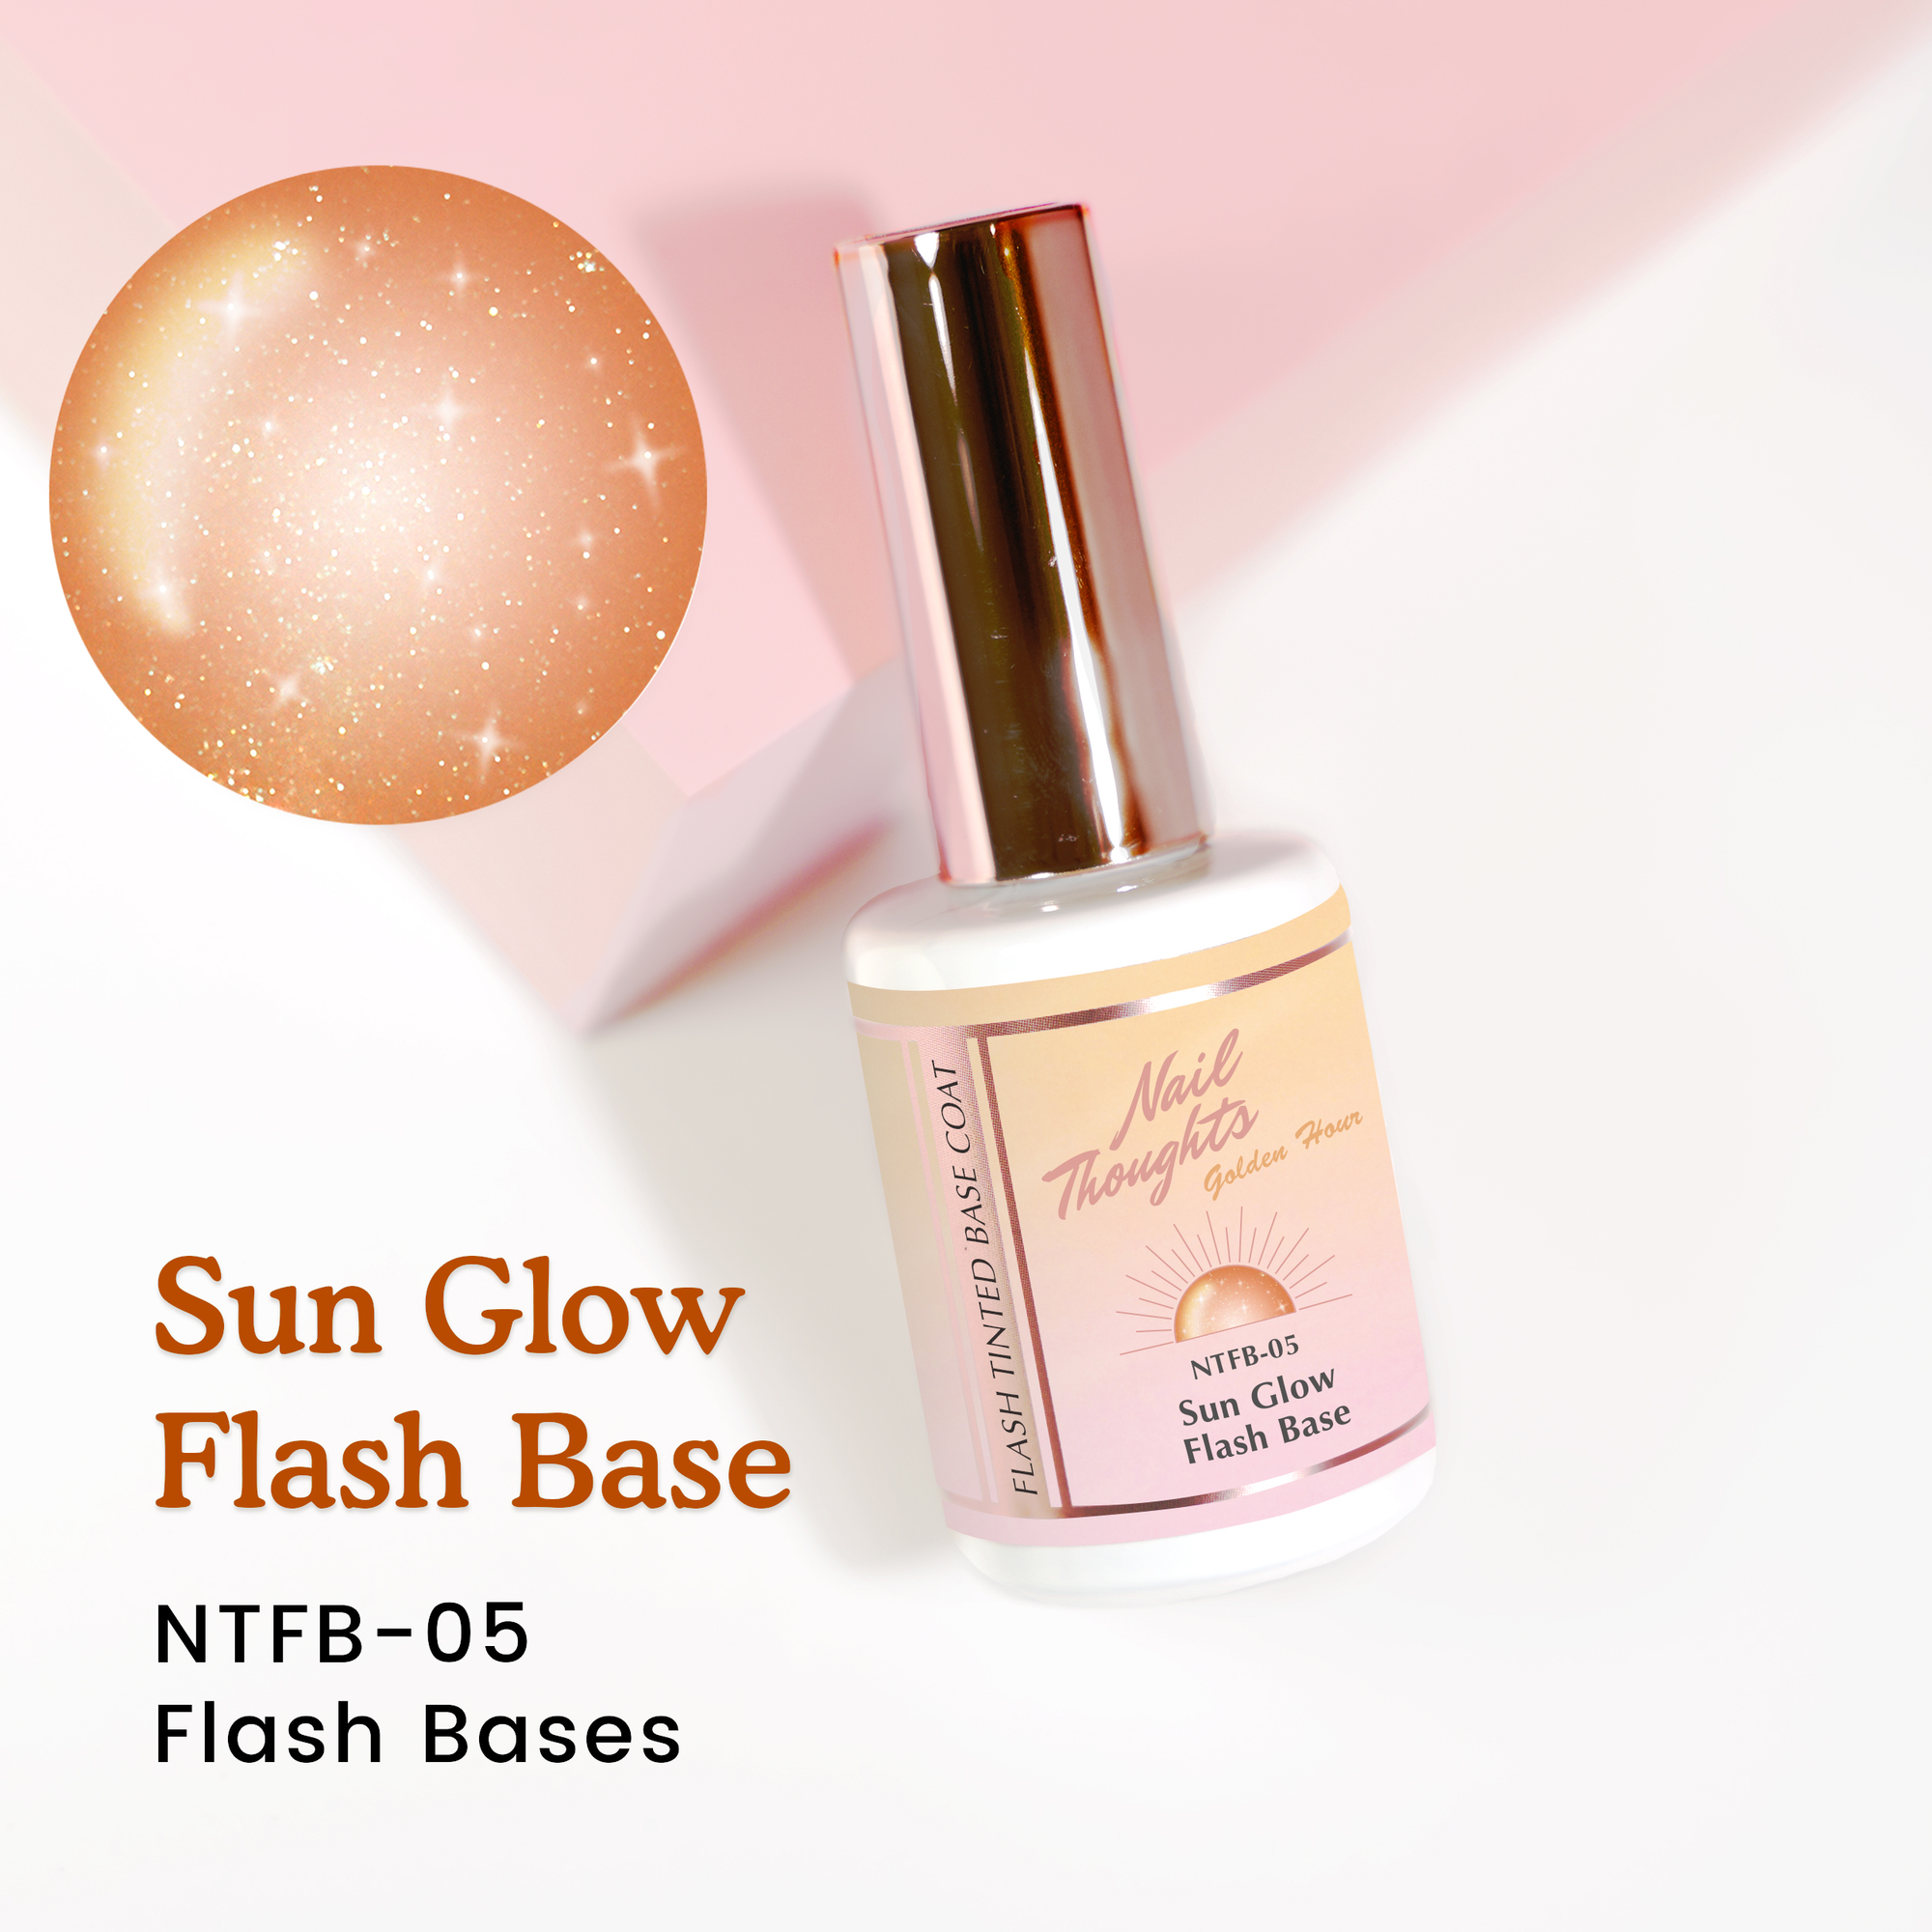 Sun Glow Flash Base NTFB-05